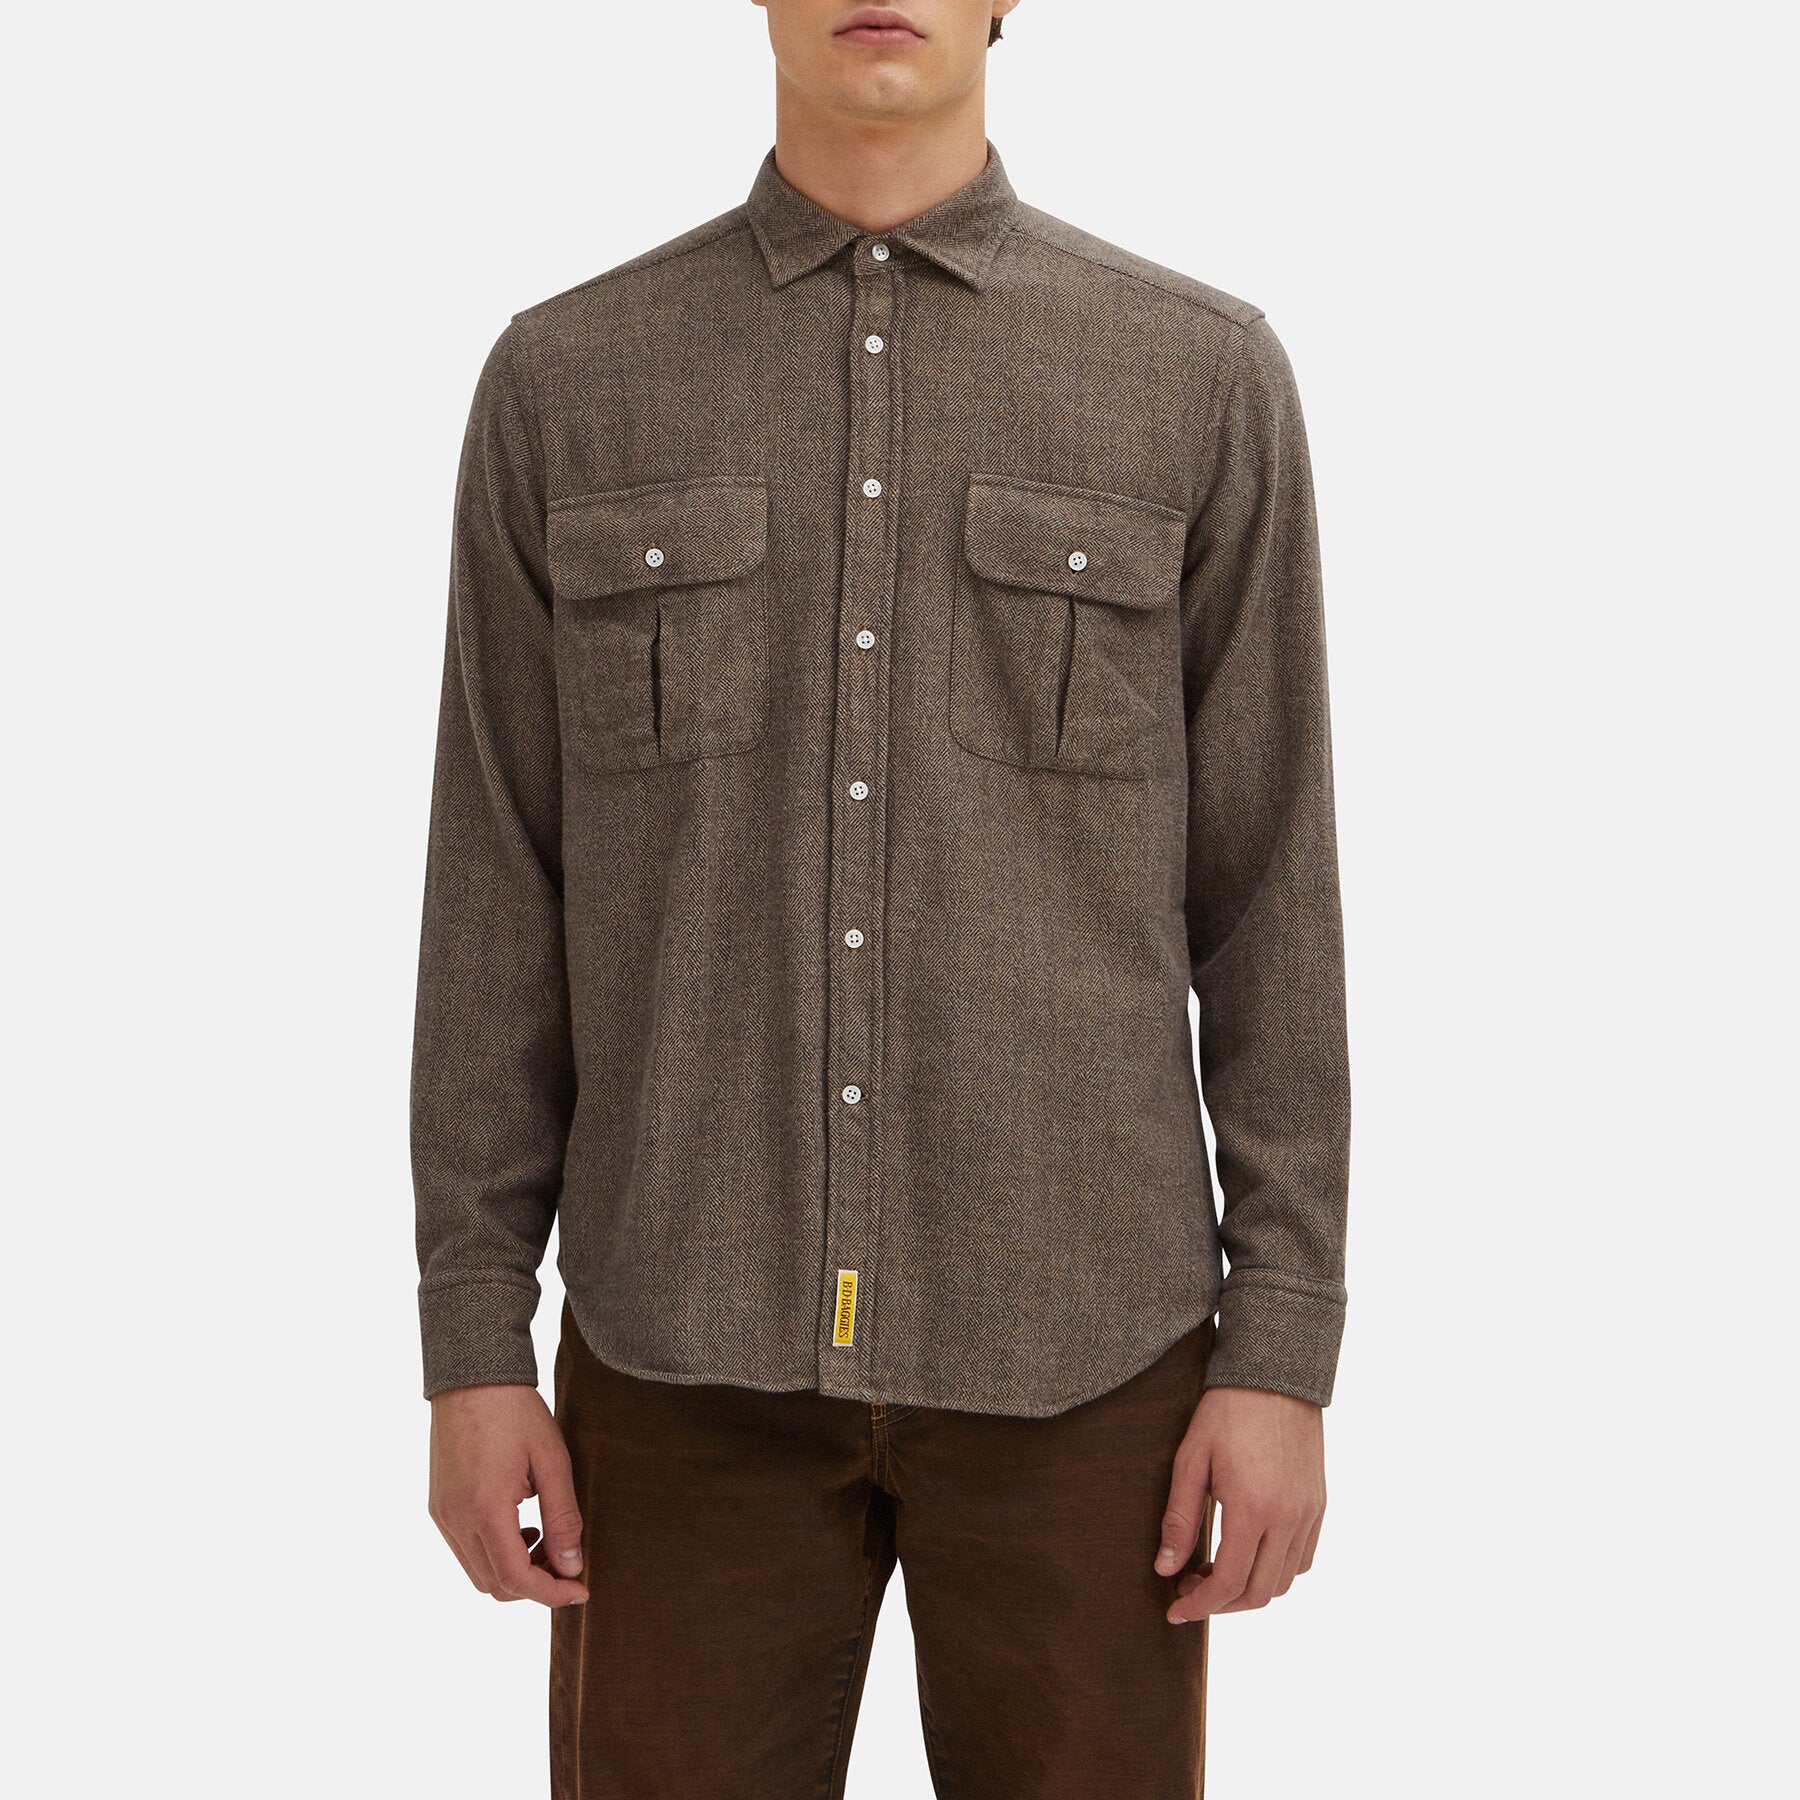 Bradford shirt with herringbone pattern